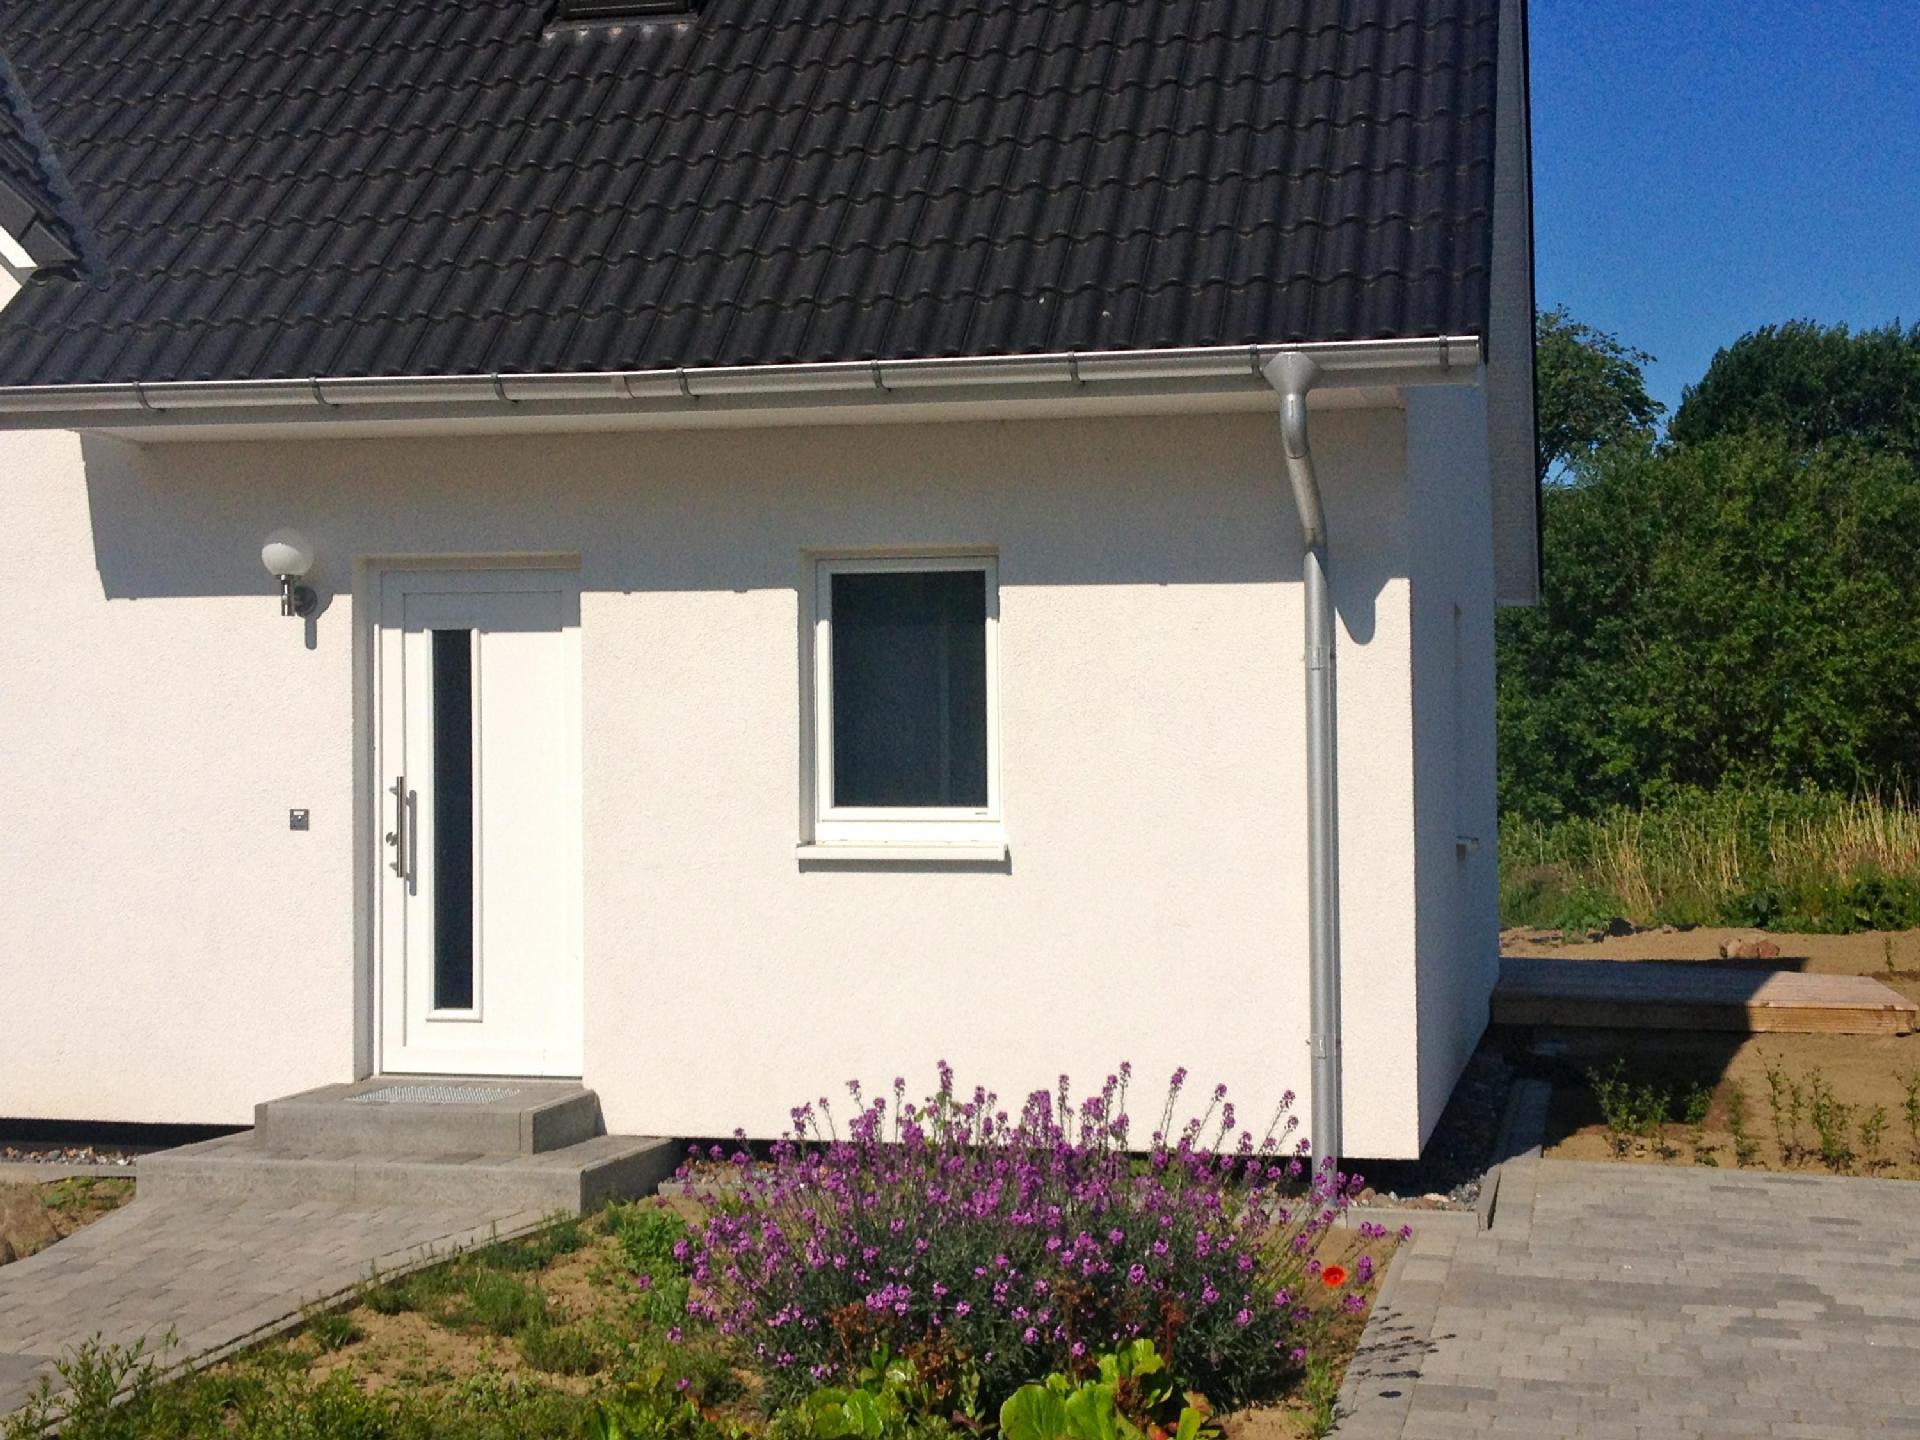 Wohnung in Patzig mit Terrasse Ferienhaus auf Rügen